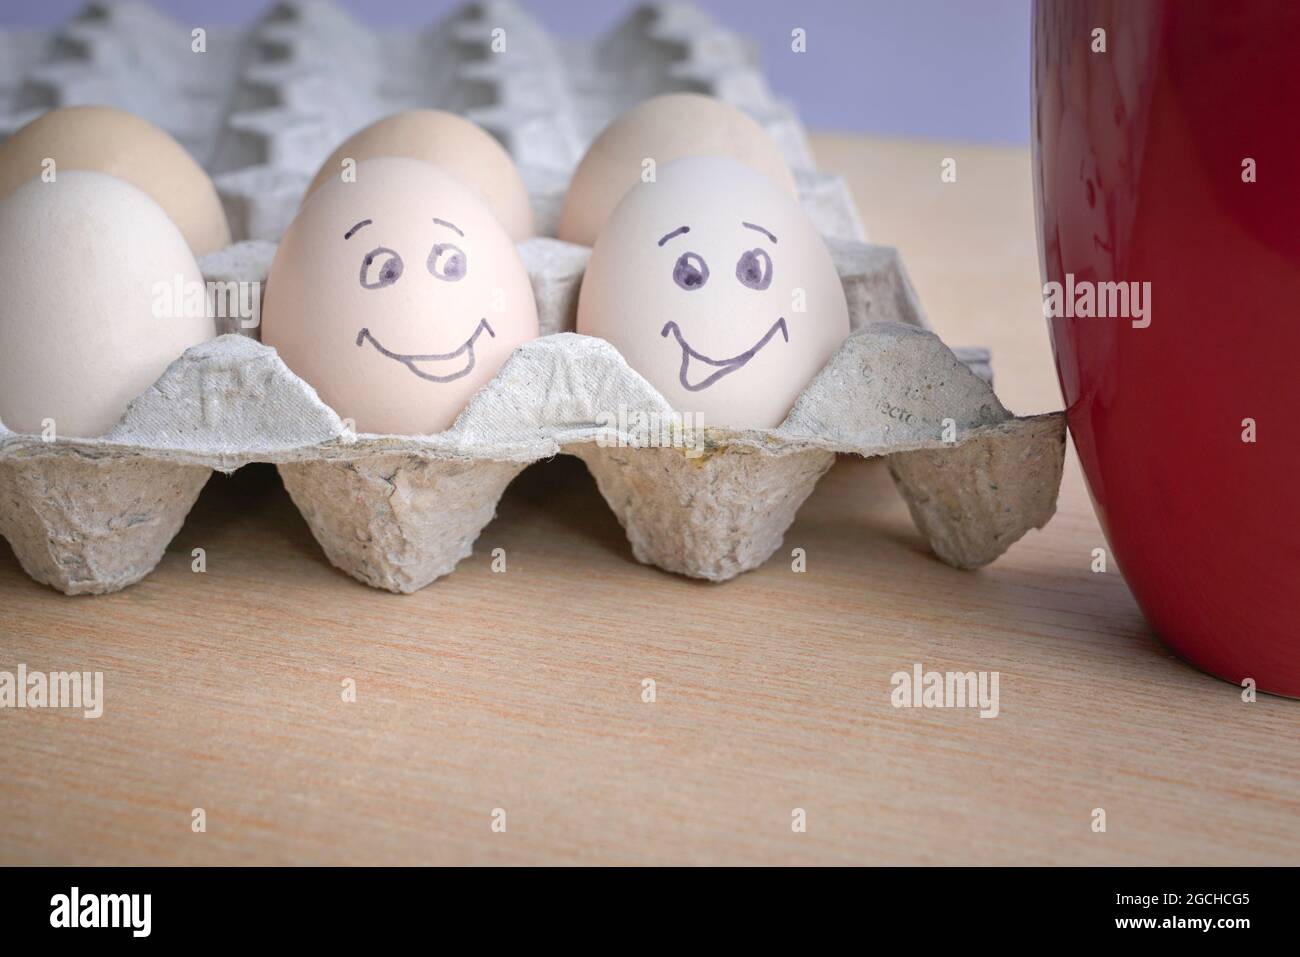 Zwei Eier mit lächelndem Gesicht neben einer roten Kaffeetasse. Good Morning Breakfast Konzept. Stockfoto